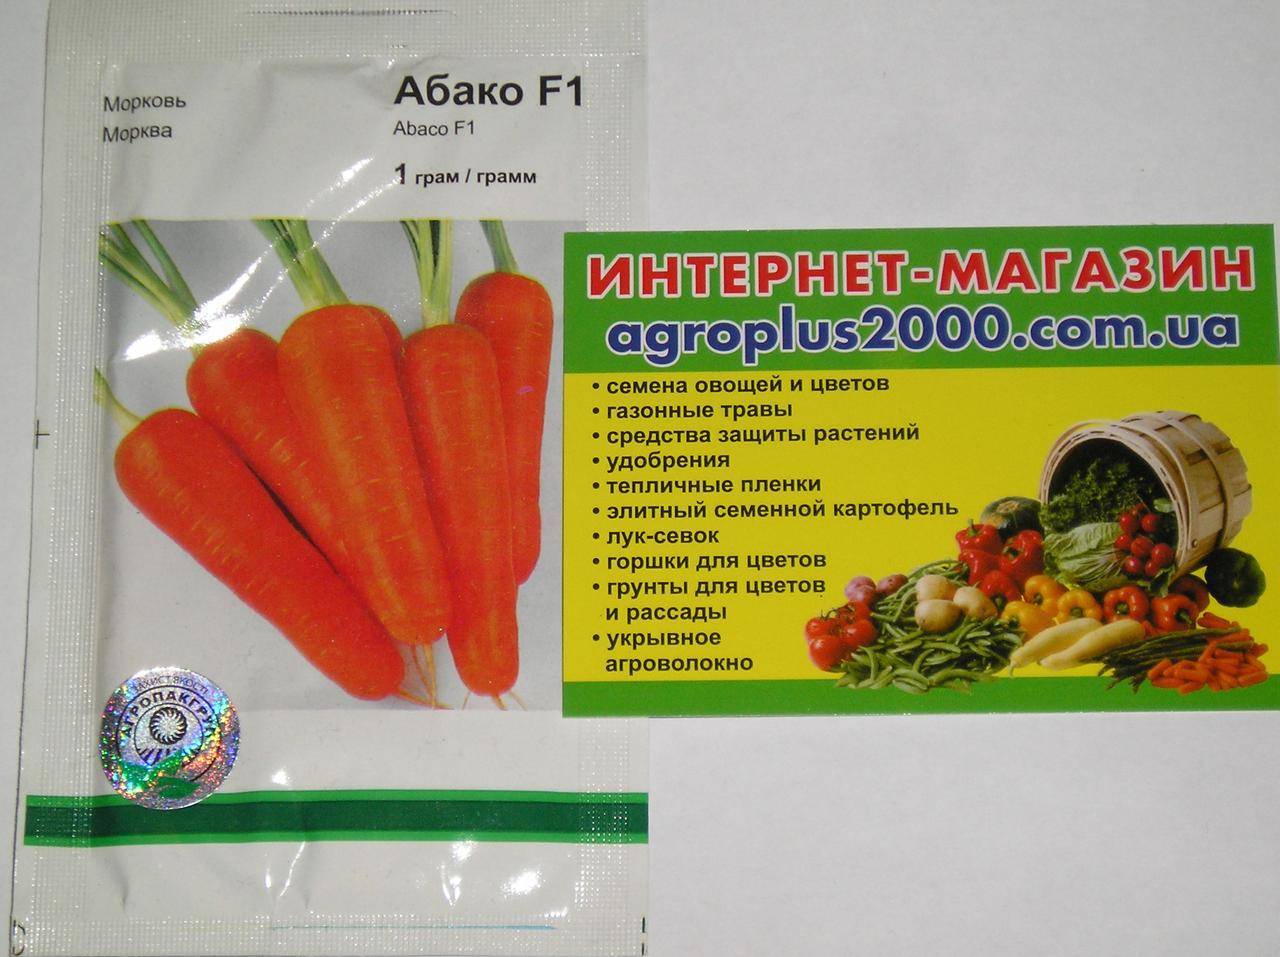 Морковь абако - описание сорта, фото